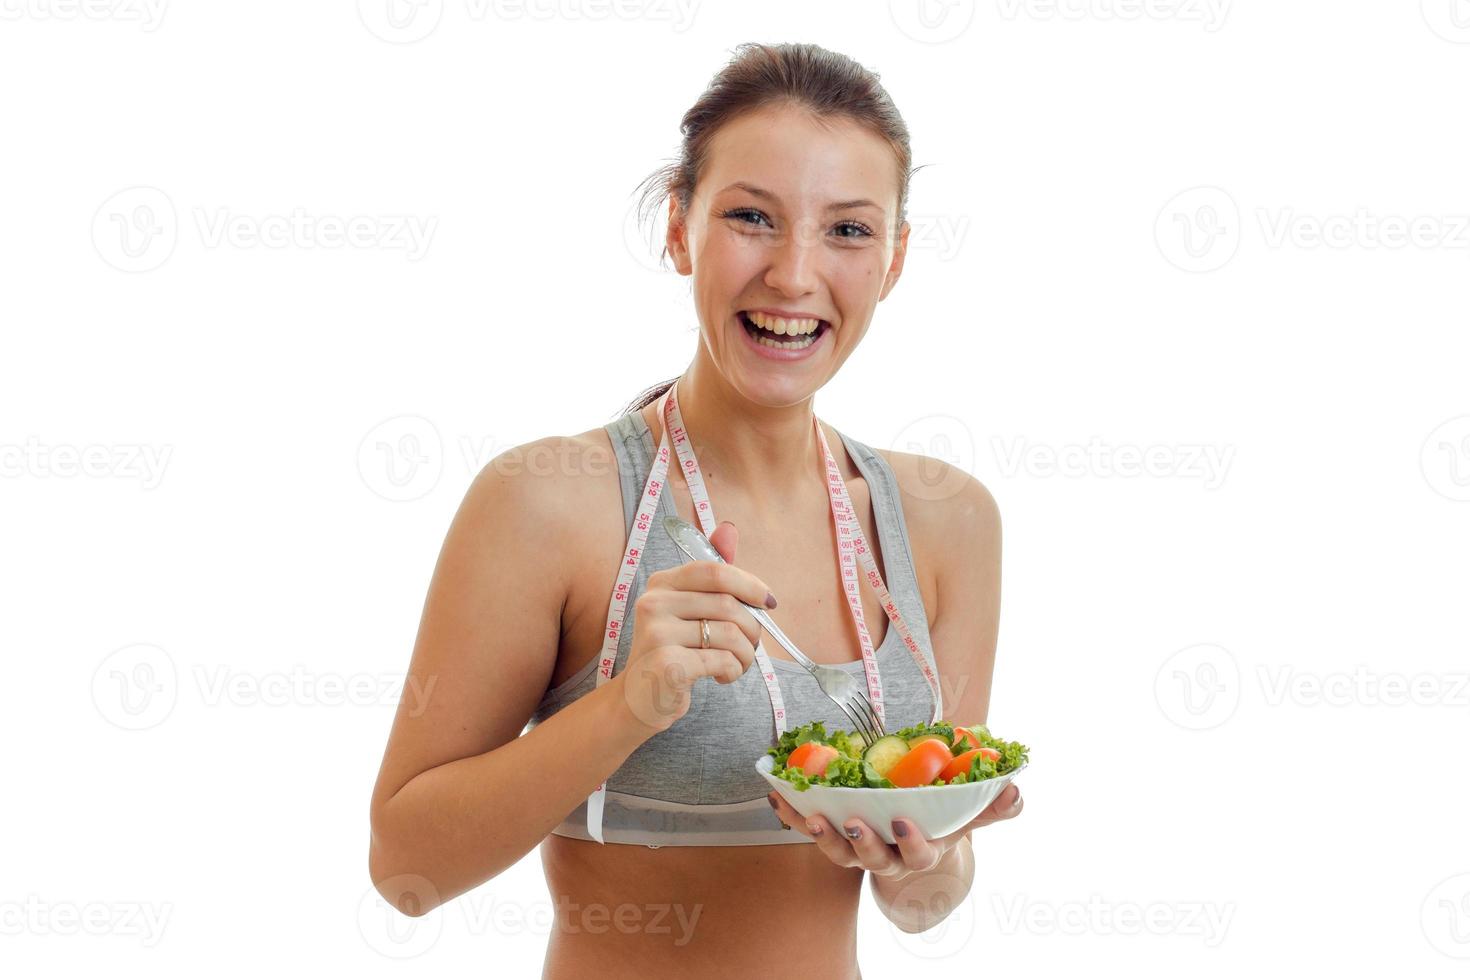 heureuse jeune femme sportive mange de la salade et rit photo